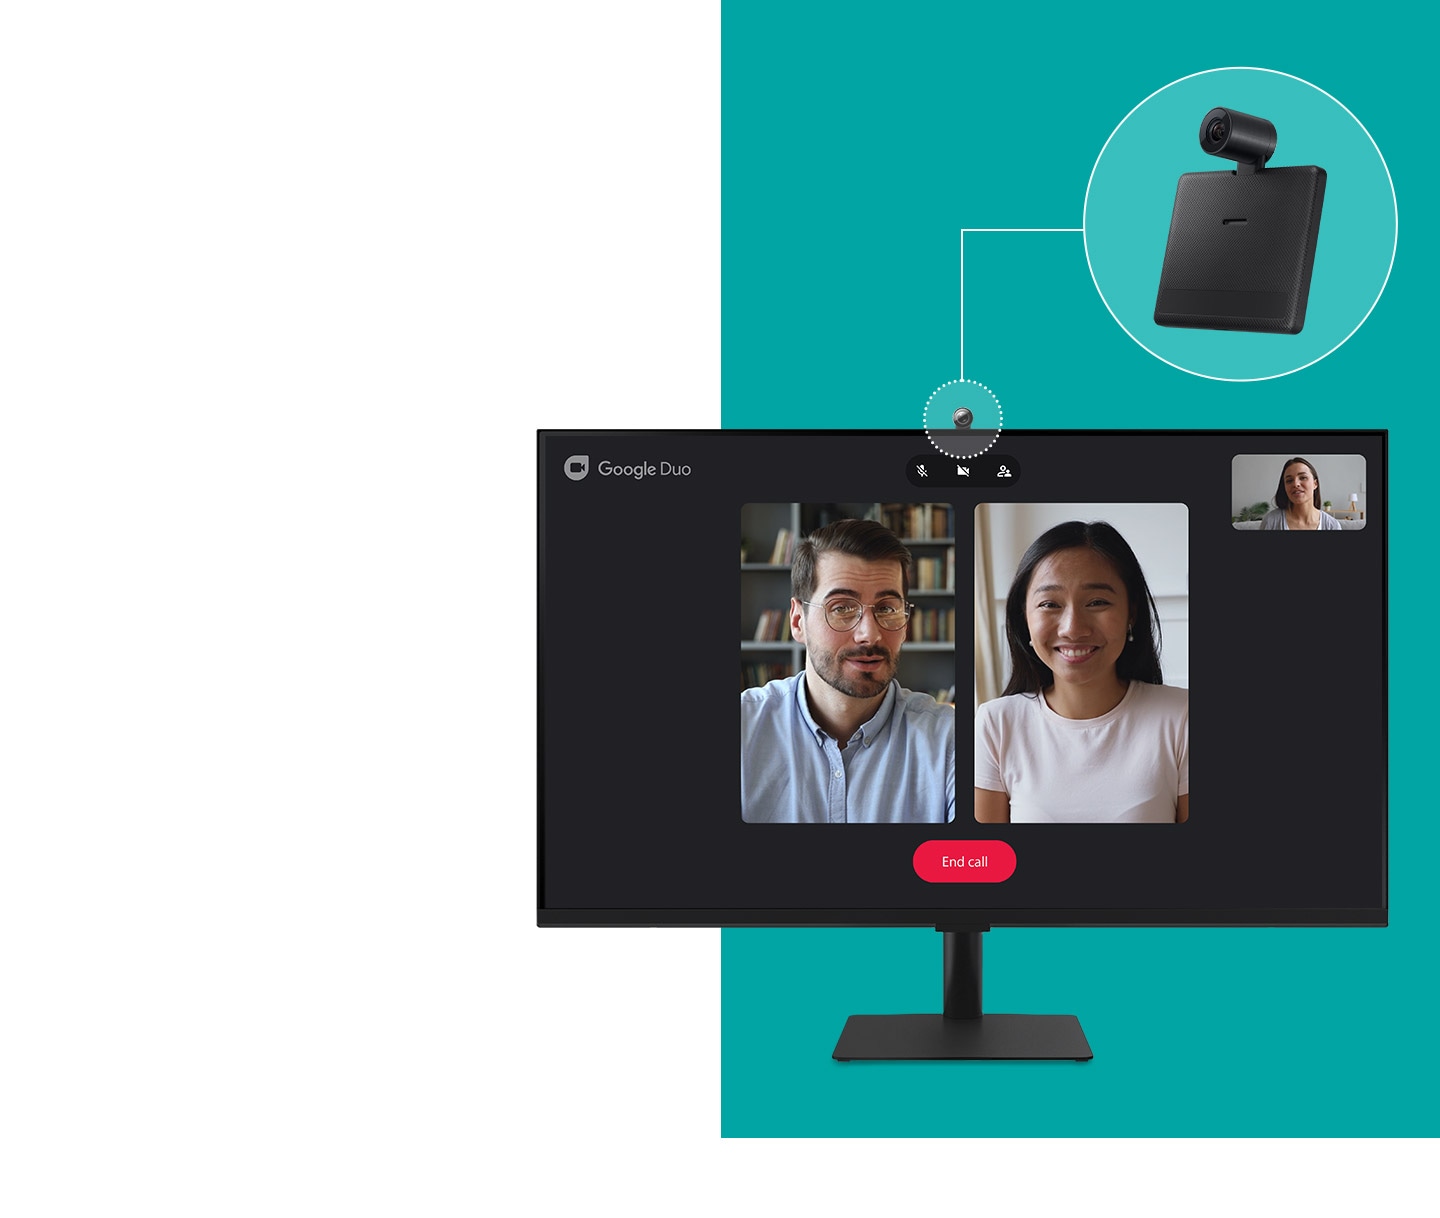 Le moniteur a maintenant une caméra circulaire attachée à son sommet.  Sur l'écran montre l'interface de l'application de chat Google Duo avec trois autres utilisateurs participant à un appel vidéo.